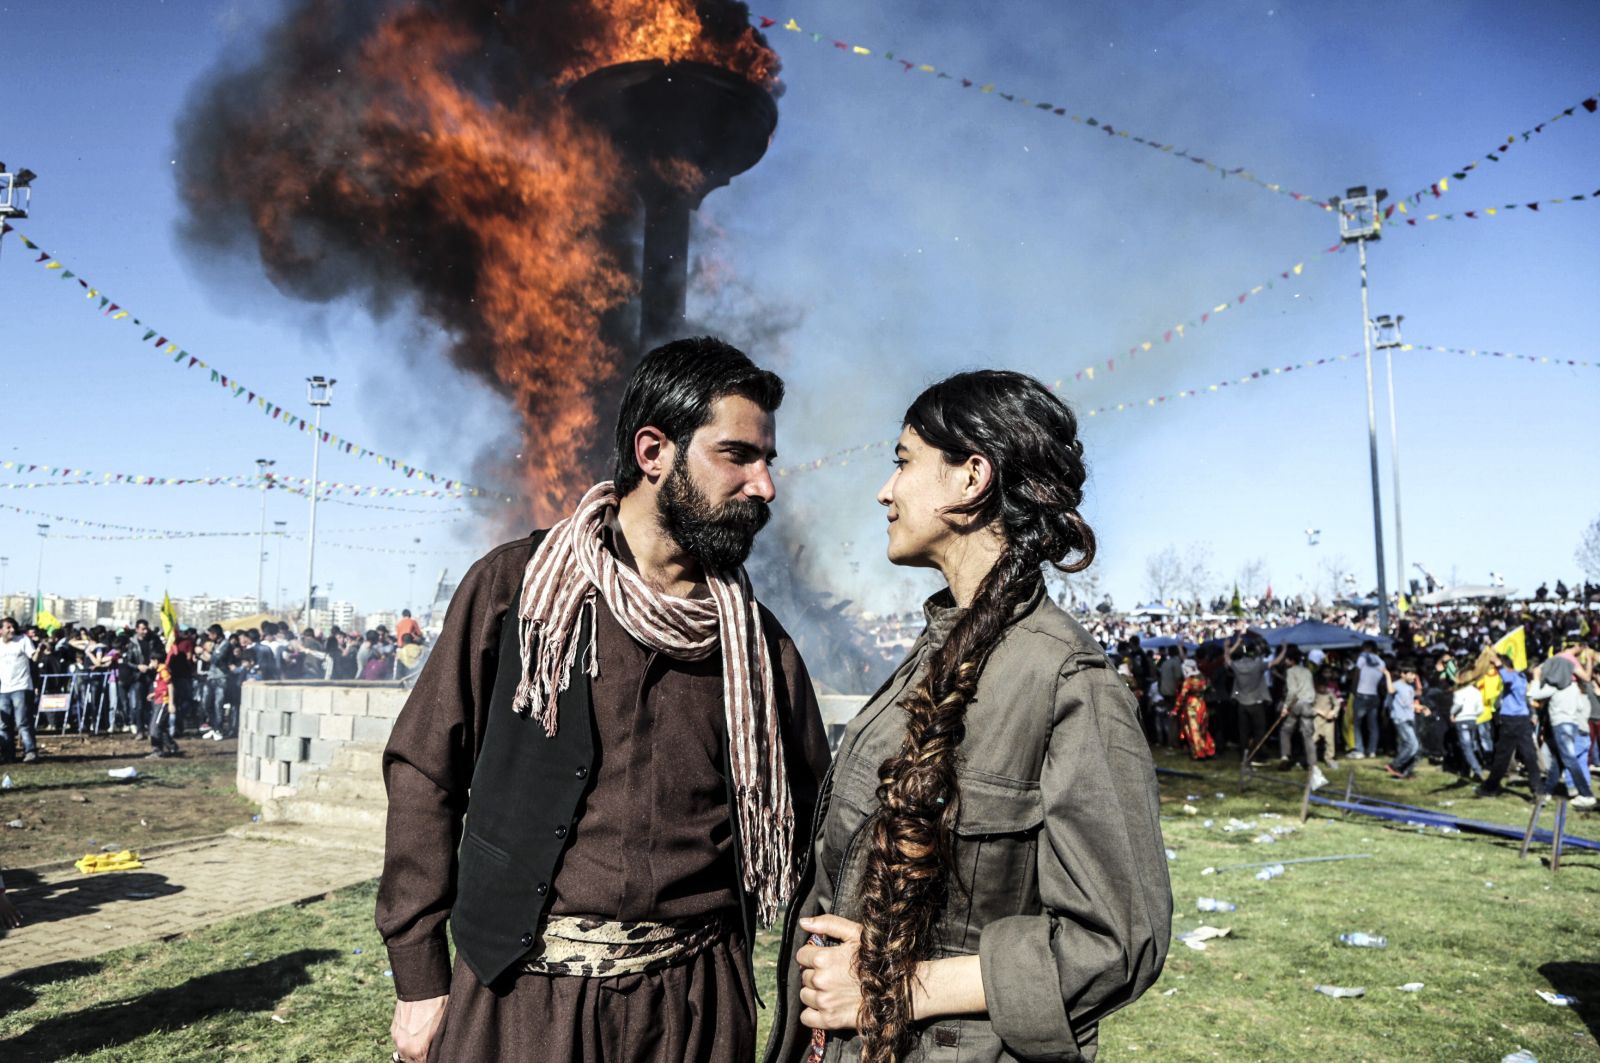 16. Kurdish Couple during the 2016 Newroz Celebrations